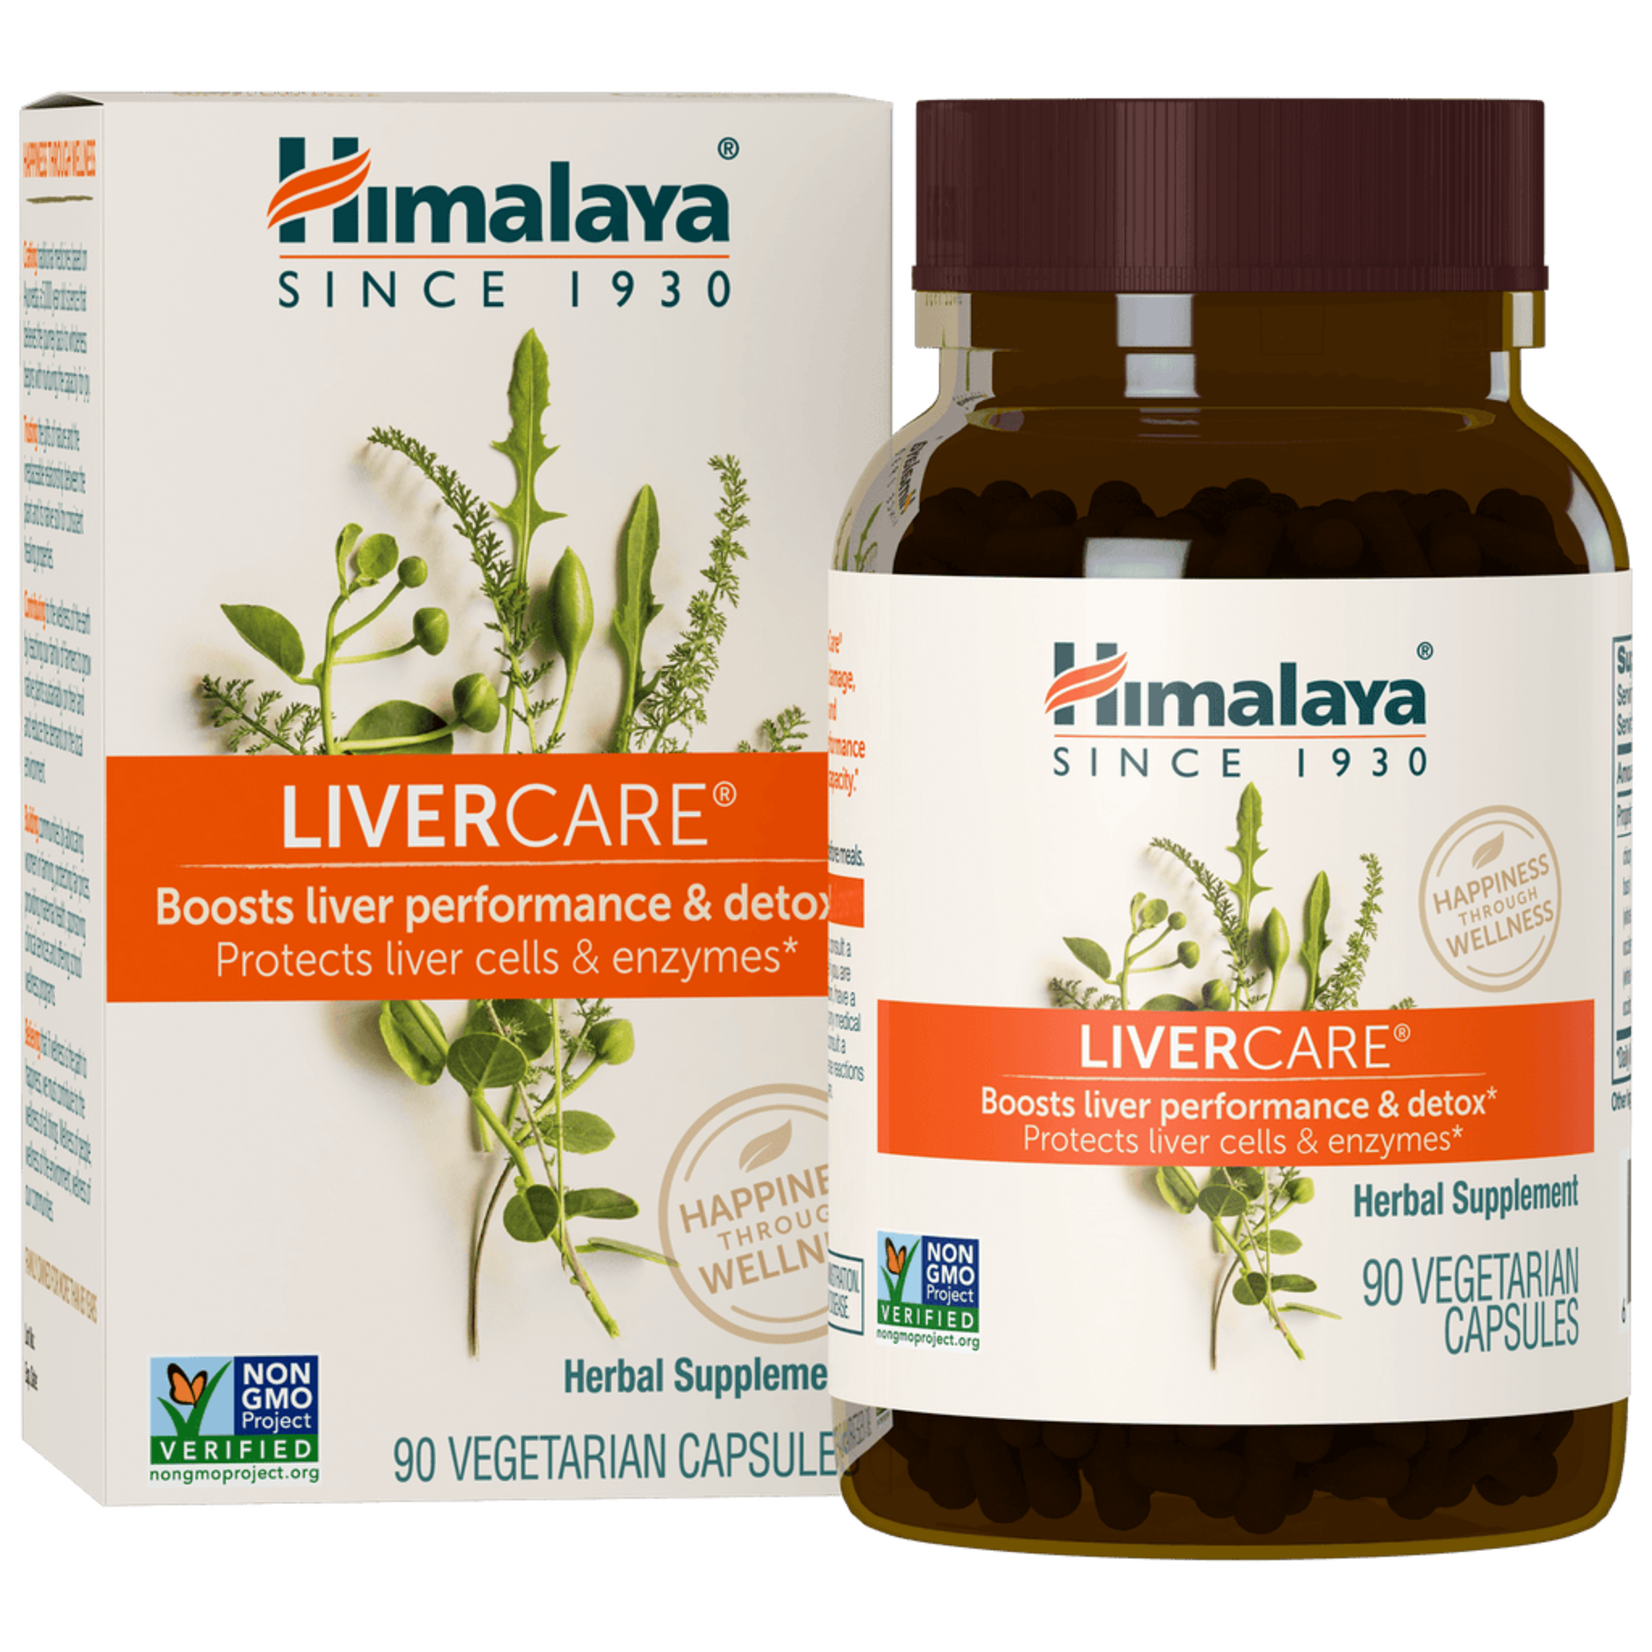 Himalaya Himalaya - Liver Care - 90 Veg Capsules